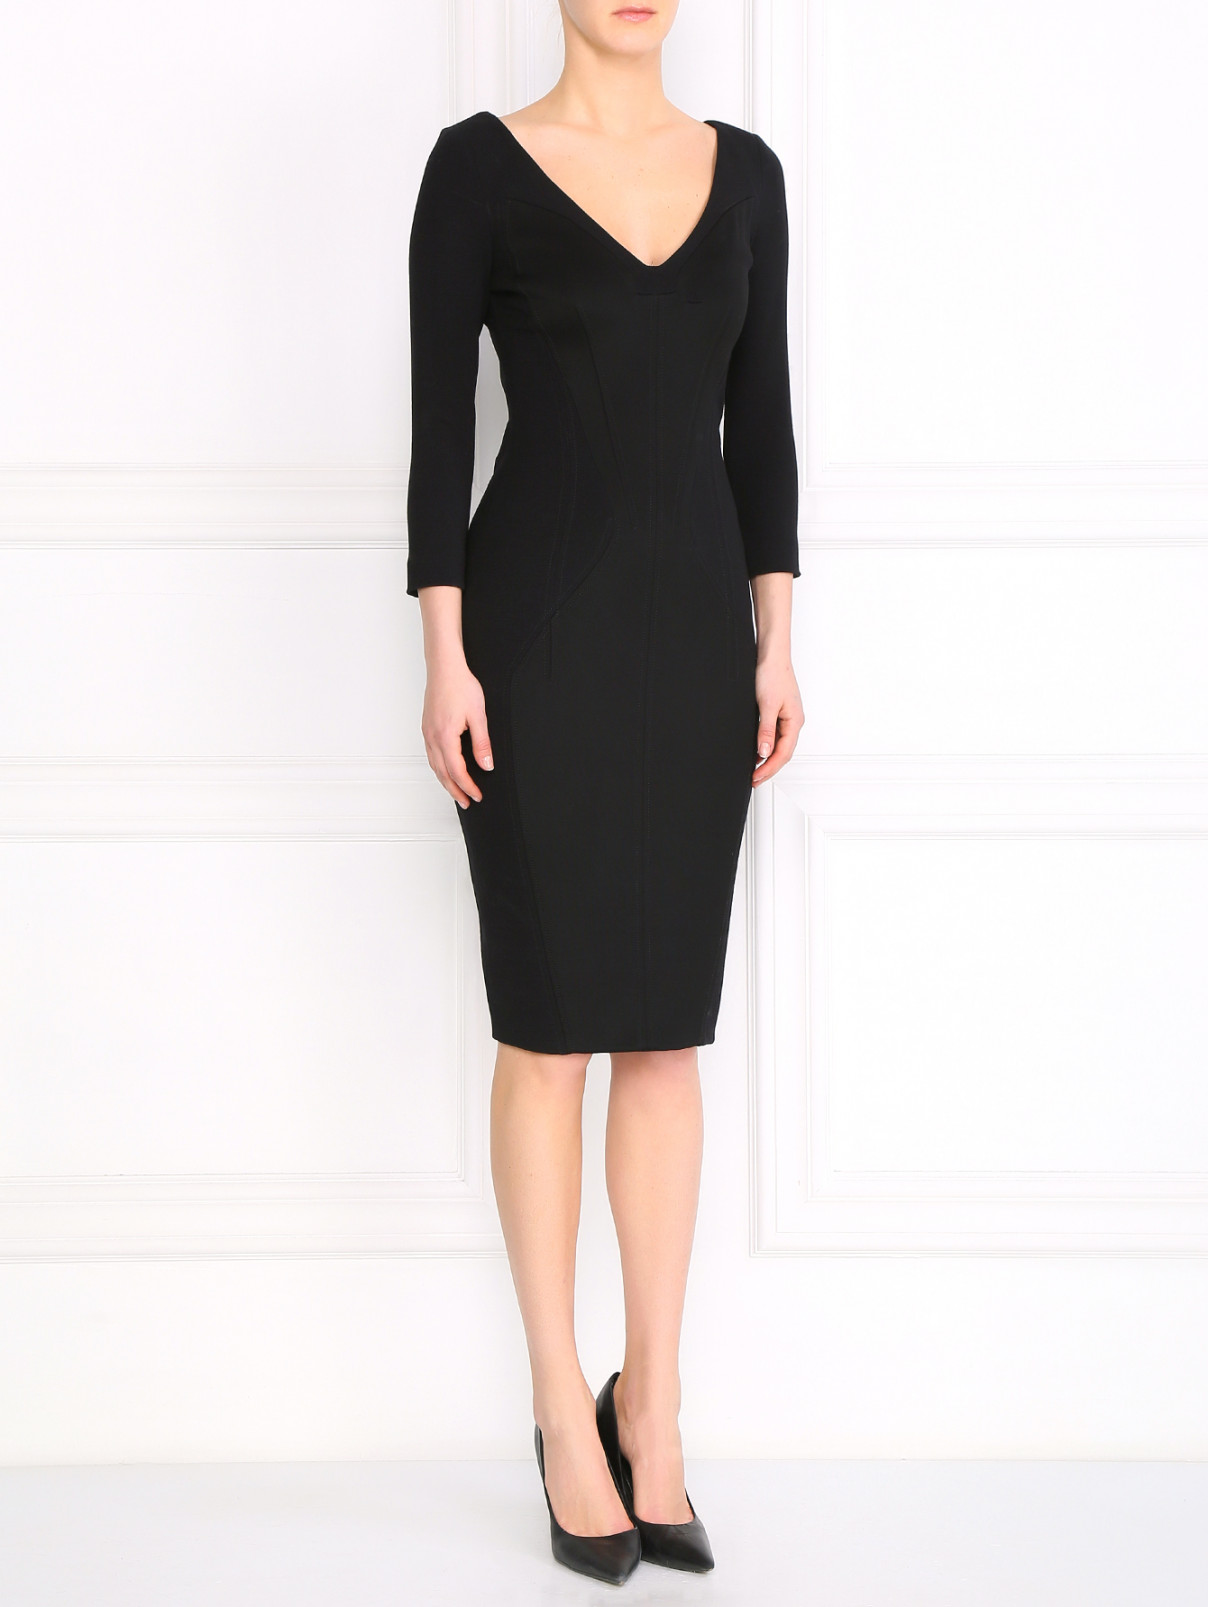 Платье-футляр из шерсти и шелка Antonio Berardi  –  Модель Общий вид  – Цвет:  Черный